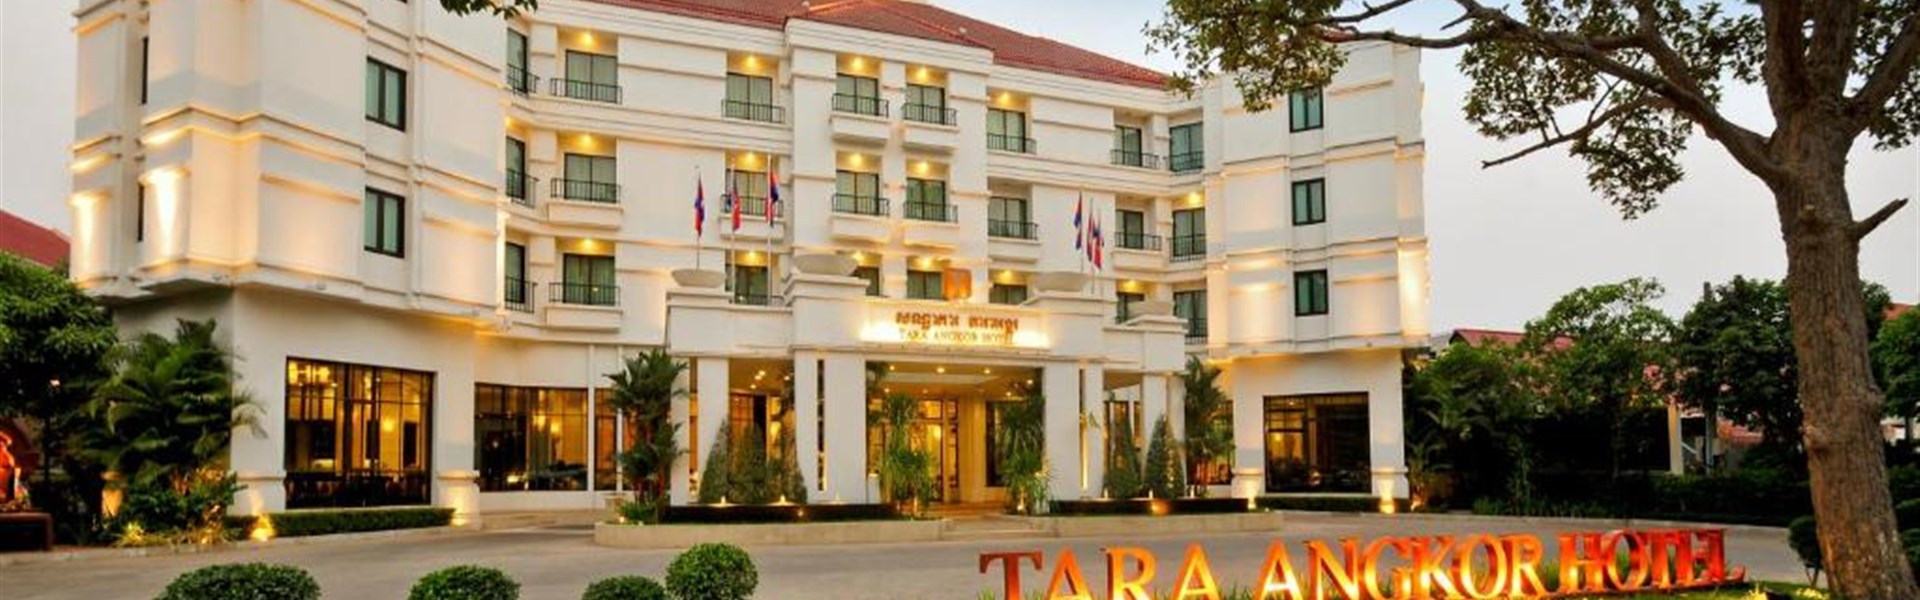 Marco Polo - Tara Angkok Hotel - 